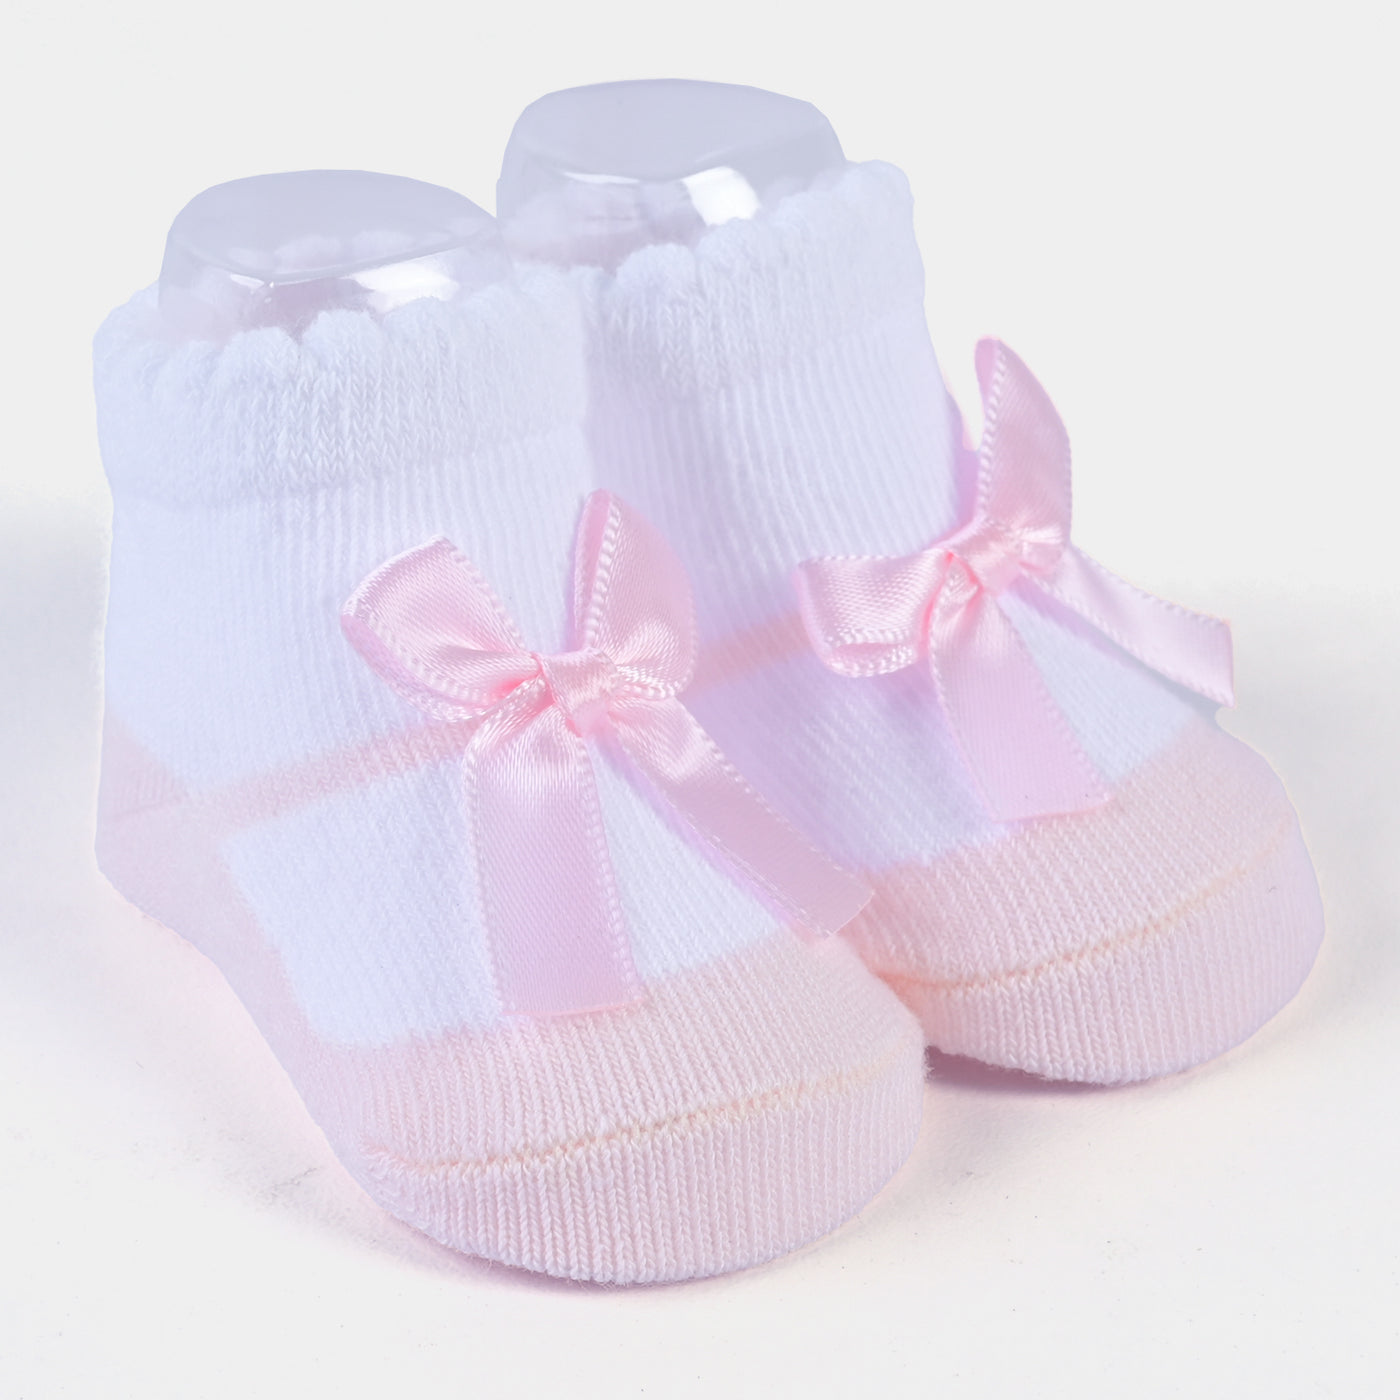 Baby Girl Socks & Headband Pack of 6PCs Gift Set